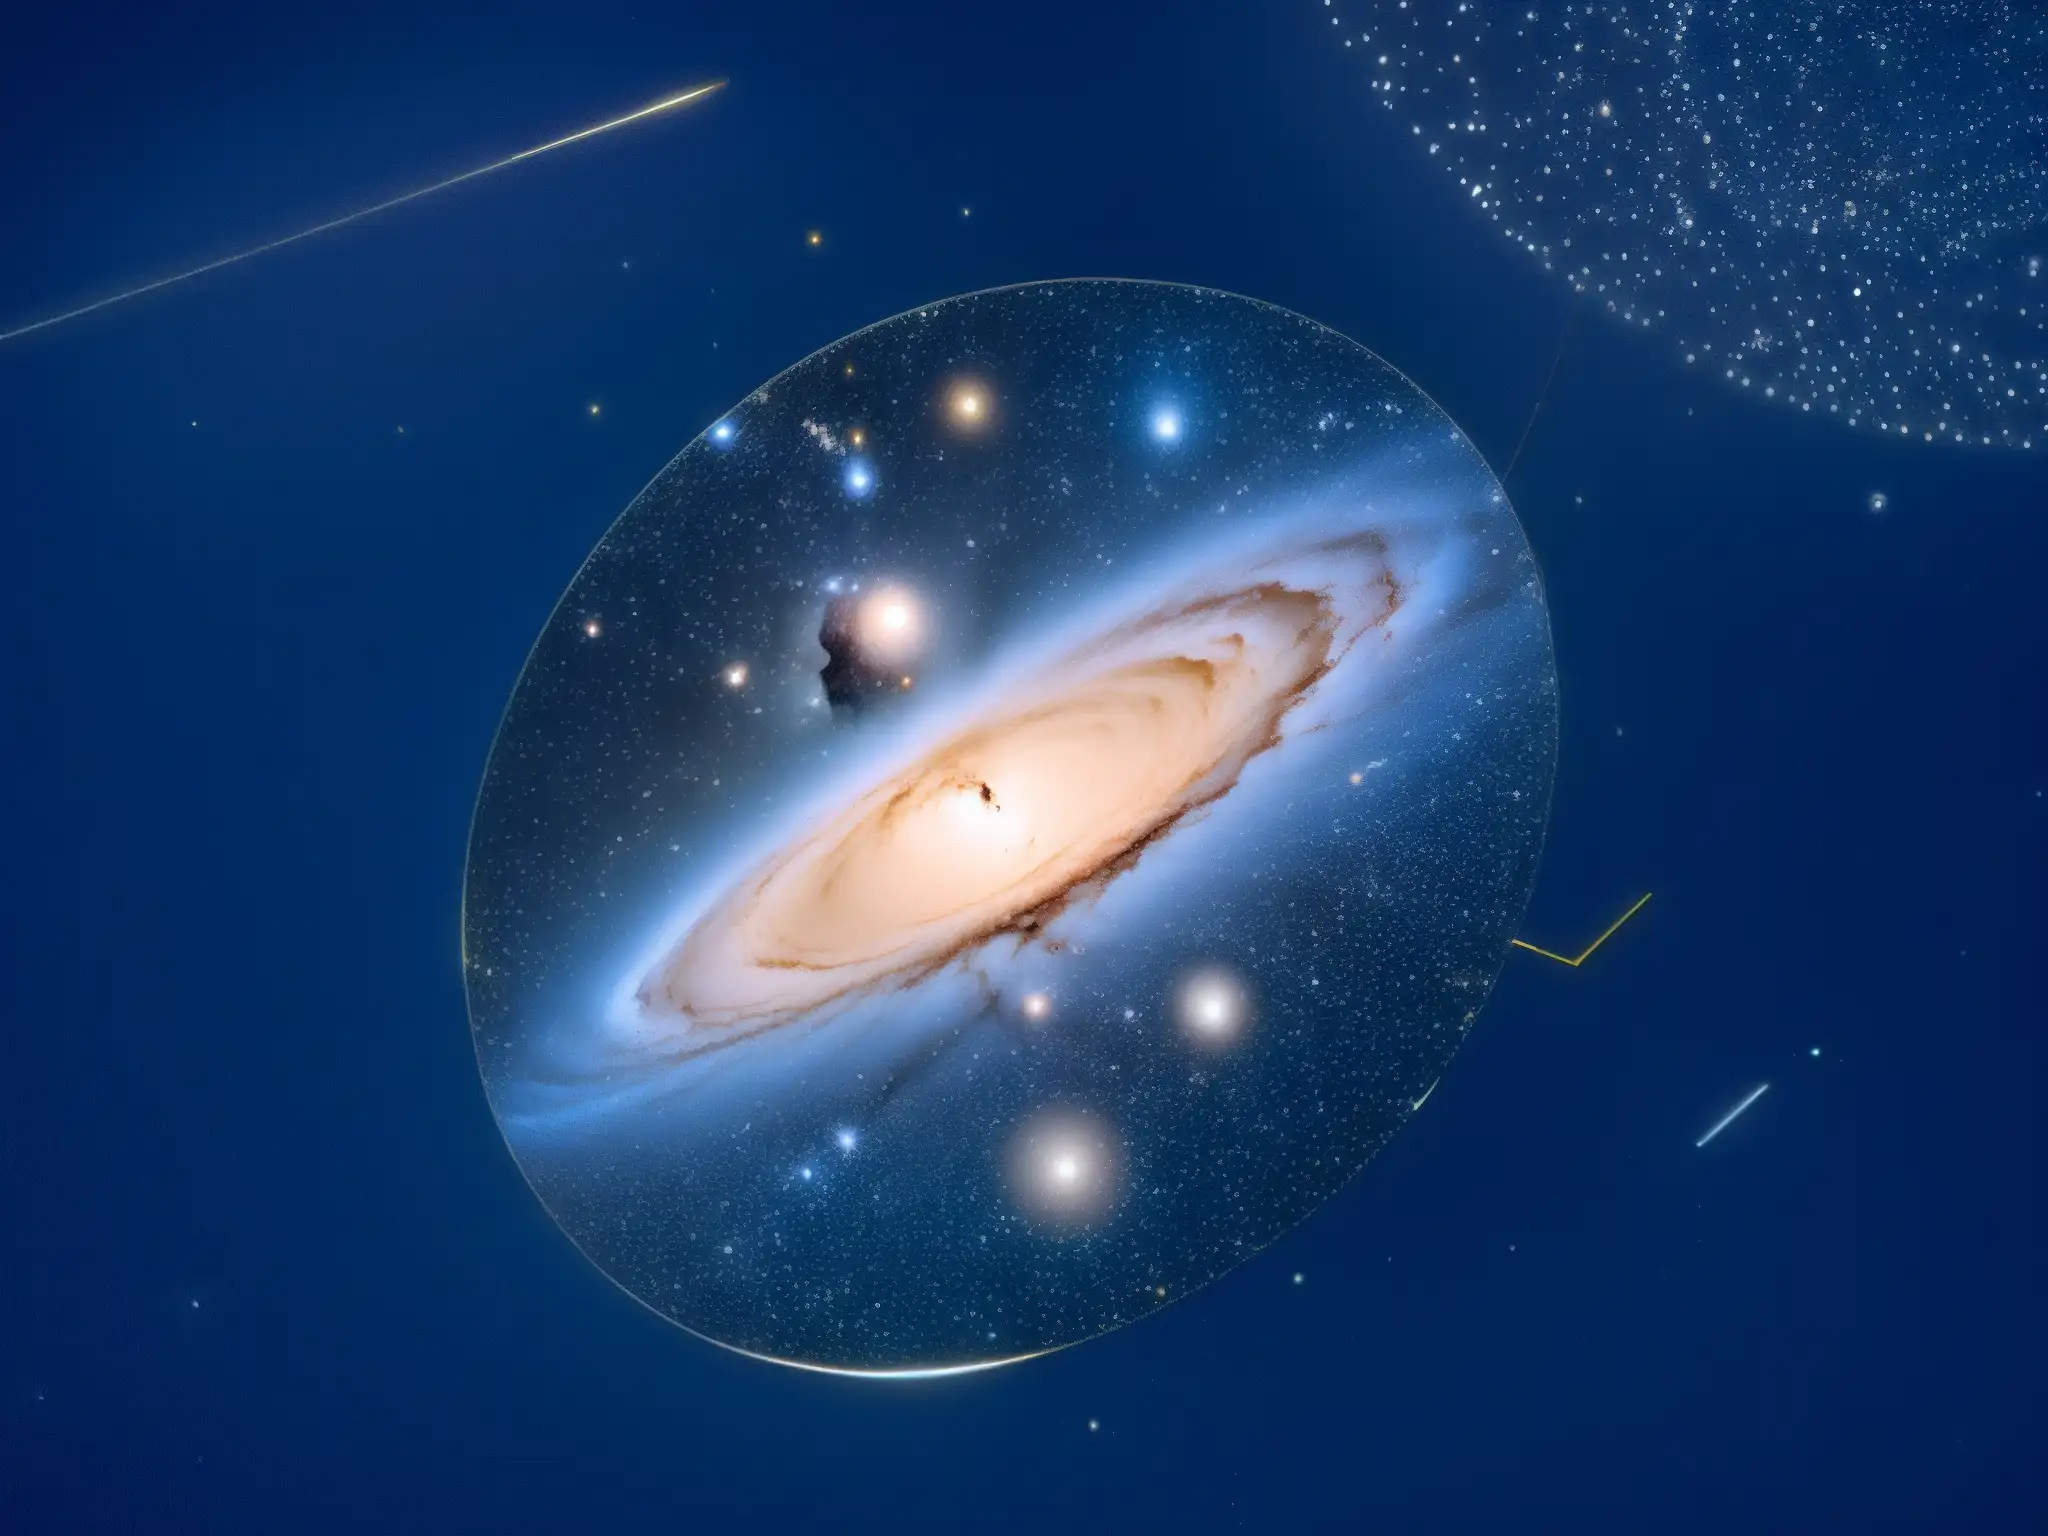 Deslumbrante constelación de Cefeo, Cassiopeia y Perseo en la noche estrellada, conectando con el mito Perseo Andromeda constelación Cefeo